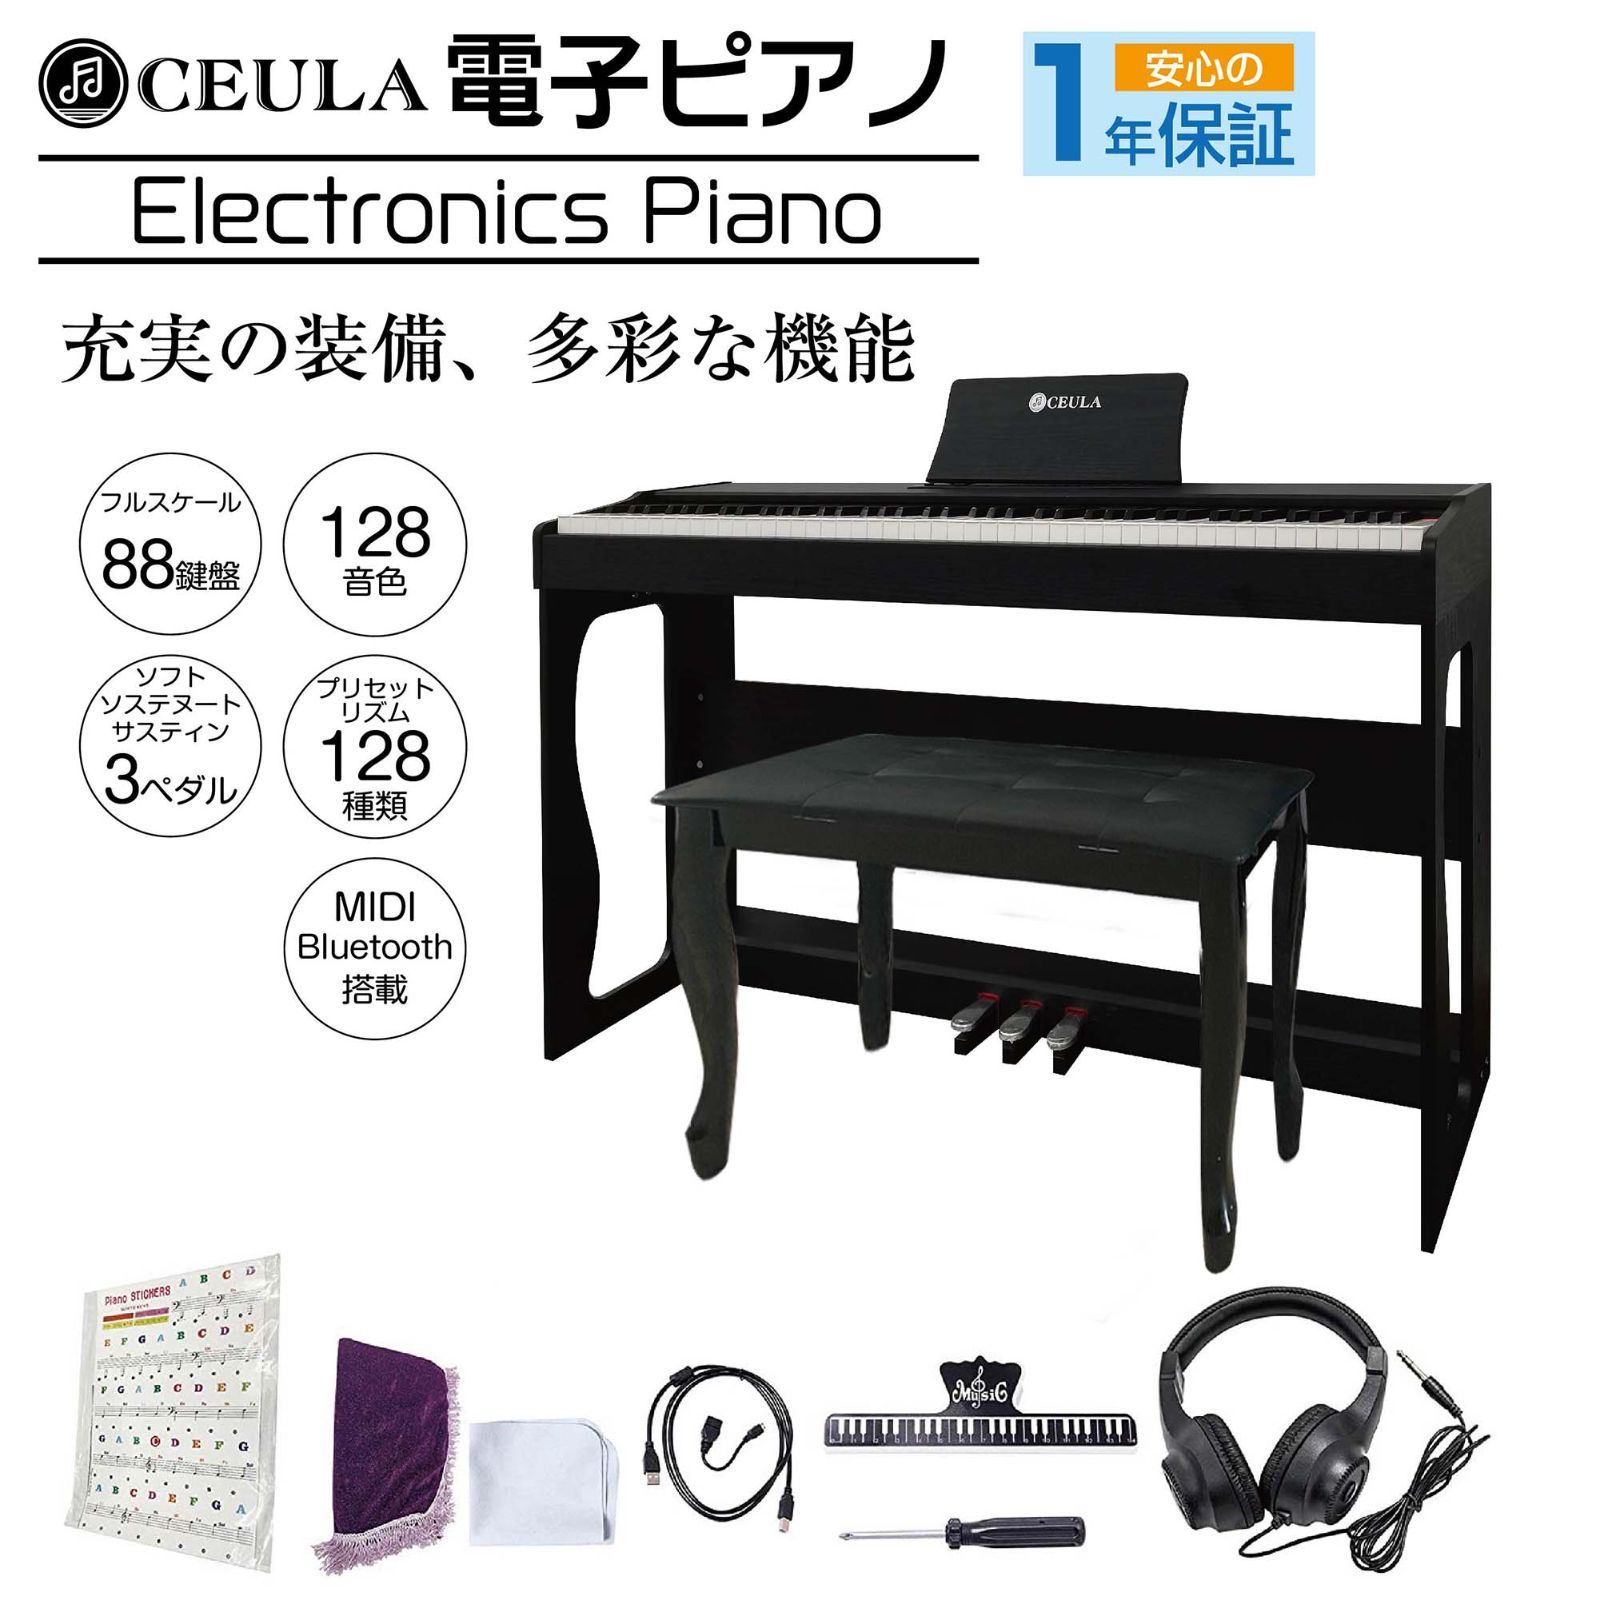 CEULA 電子ピアノ 88鍵 ブルートゥース MIDI機能 グレードハンマー3